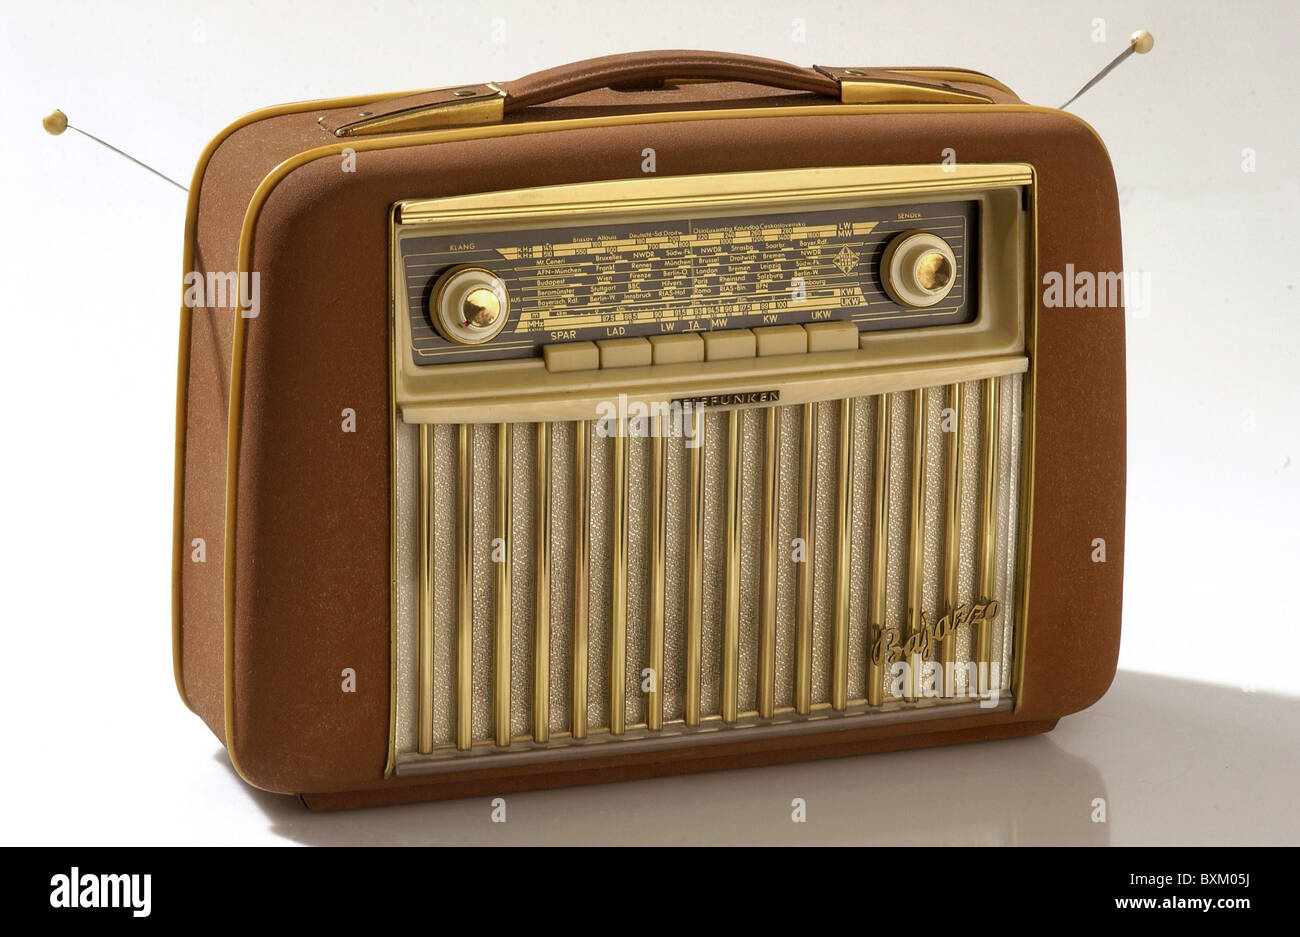 Radio, radio, radio, radio Telefunken Bajazzo, Alemania, 1955, Derechos adicionales-Clearences-no disponible Foto de stock